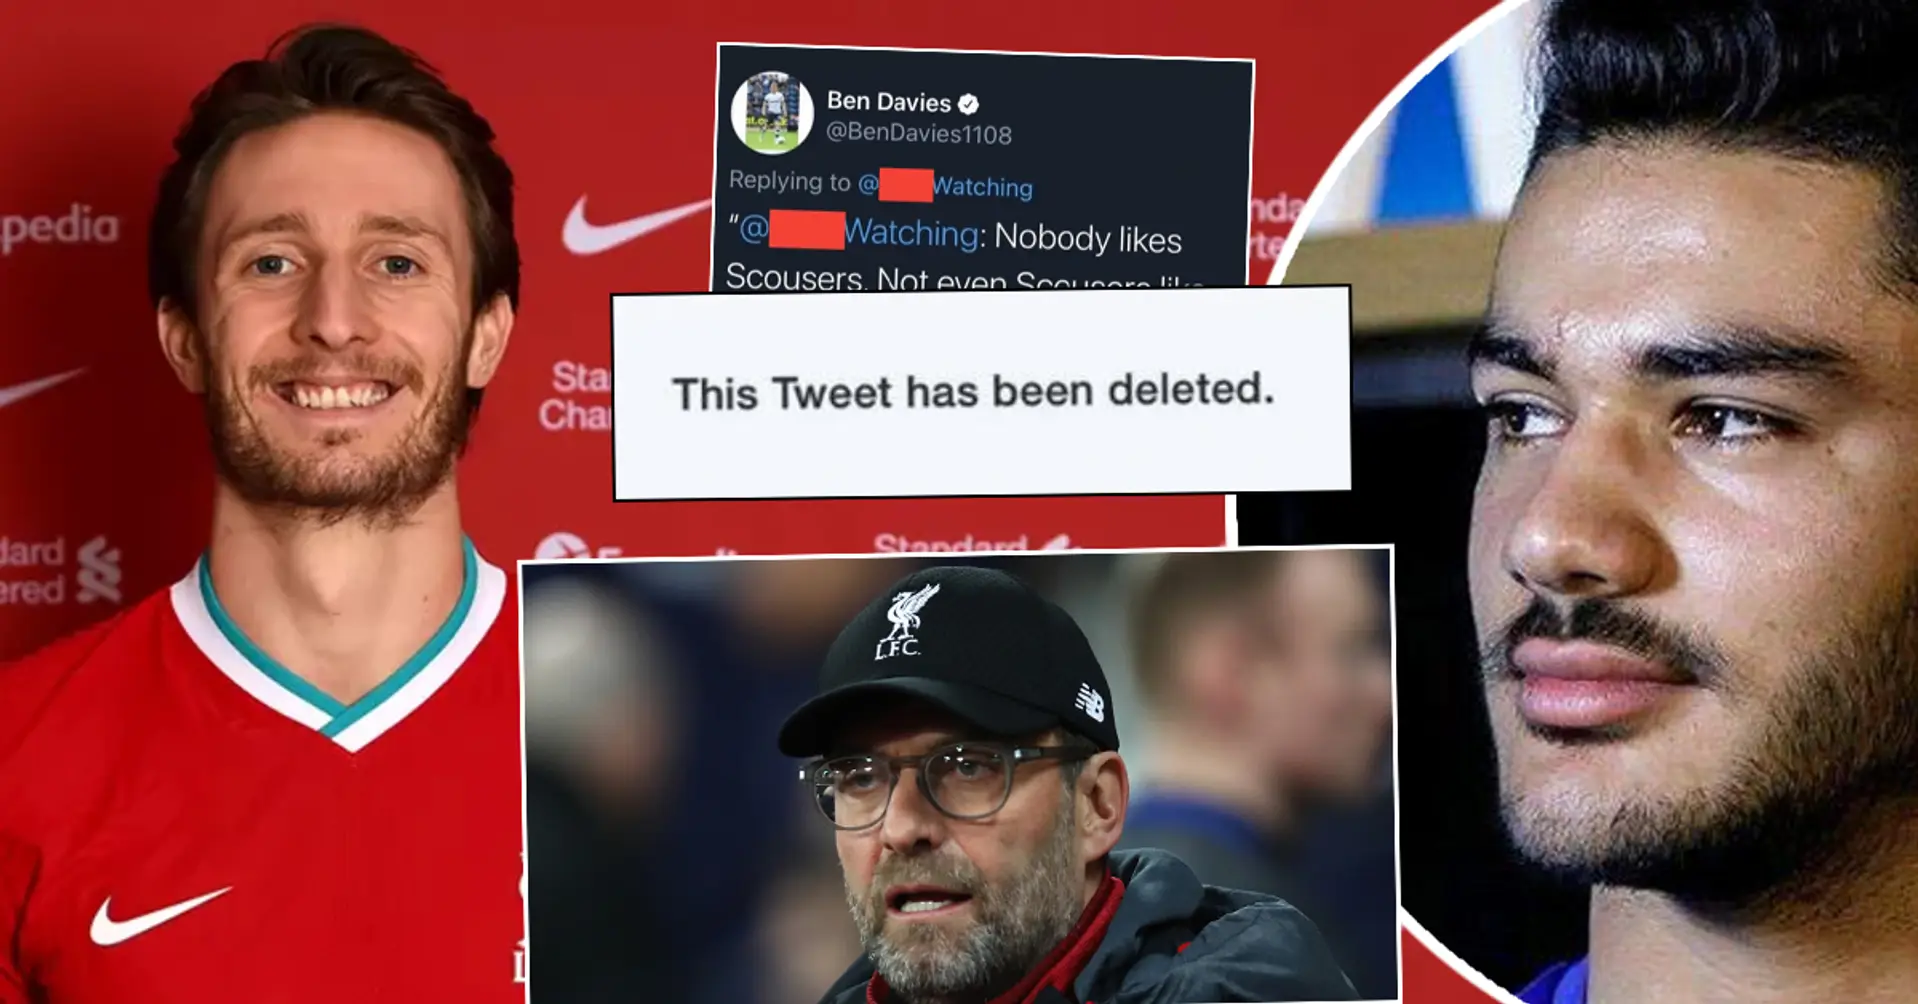 "F*** dich, Liverpool! Vorwärts, Chelsea!": 2 Liverpool-Neuzugänge löschen ihre alten kontroversen Tweets über LFC